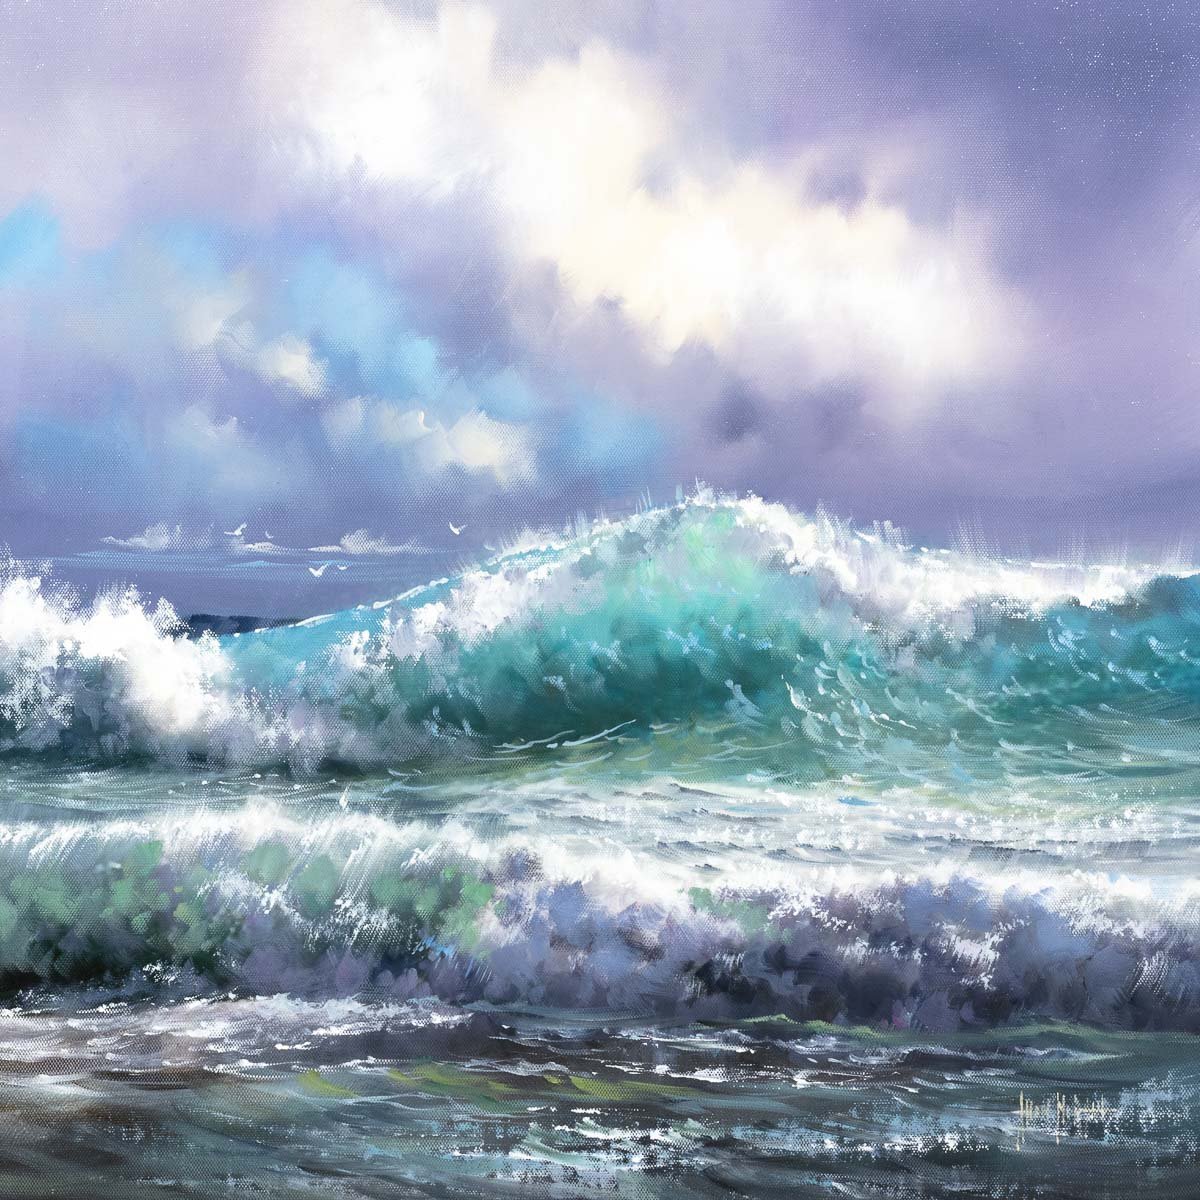 Summer Sea - Original Allan Morgan Framed